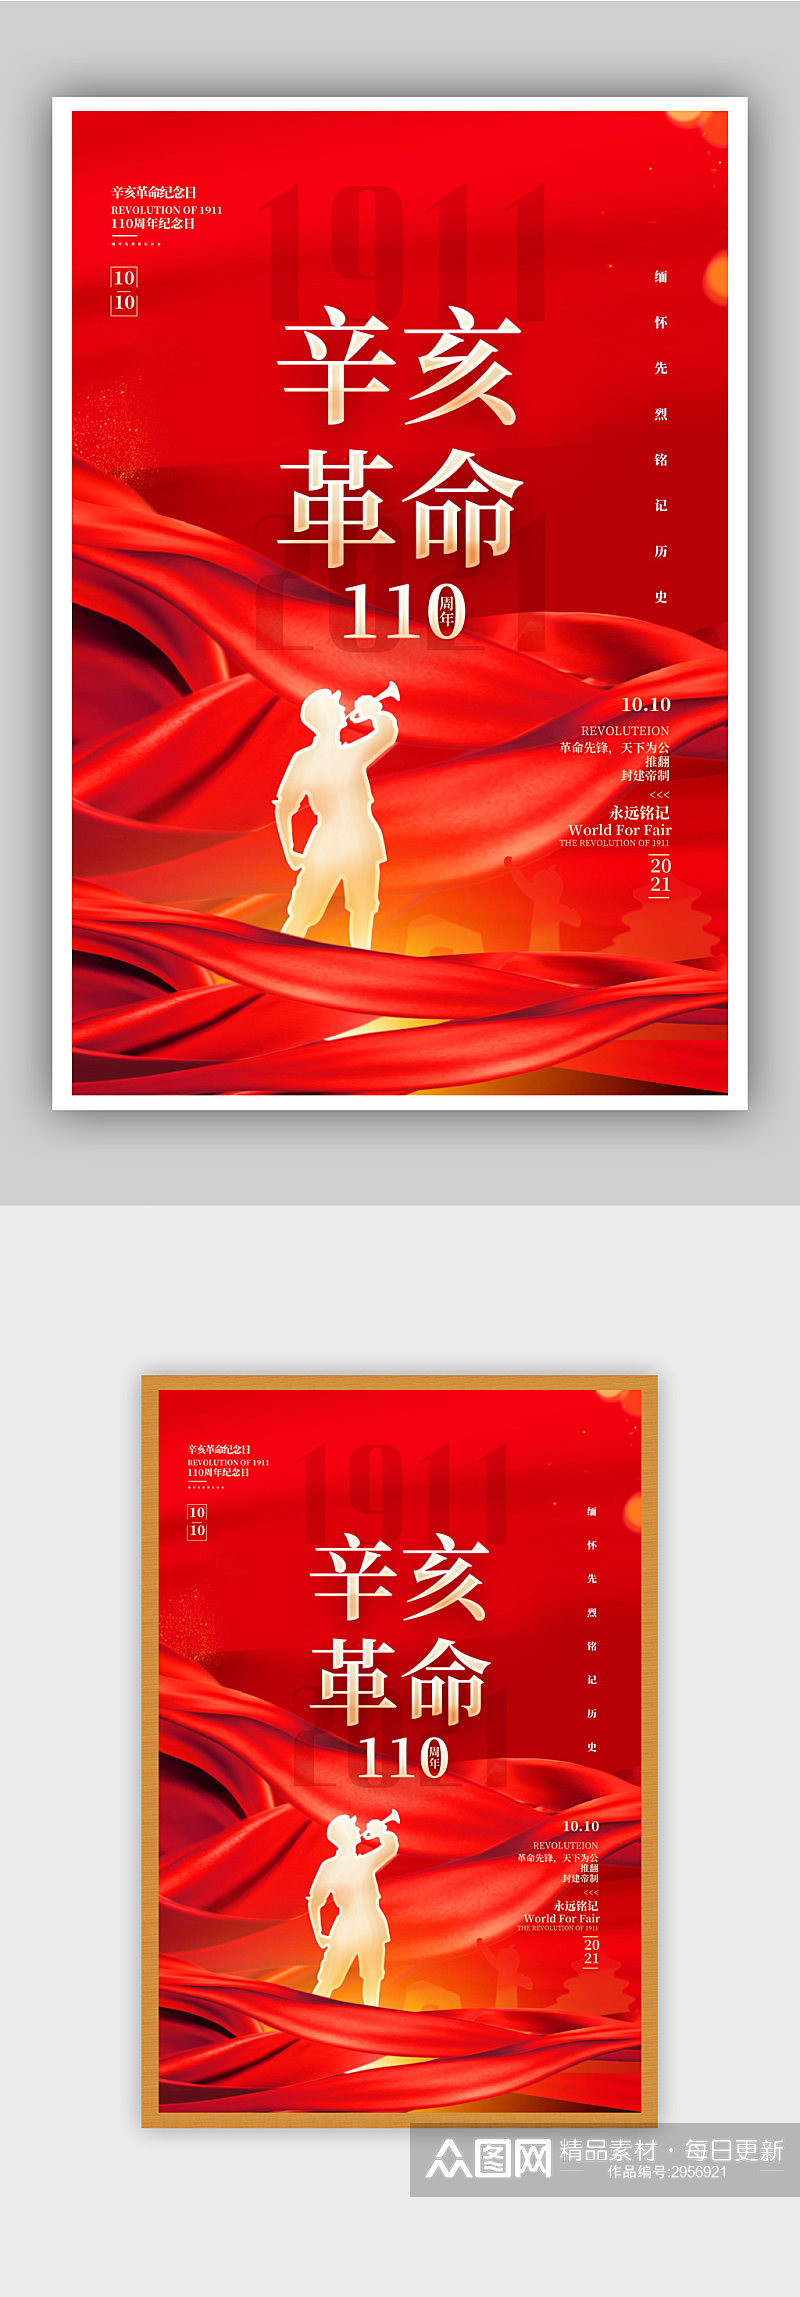 红色大气辛亥革命纪念日创意海报素材